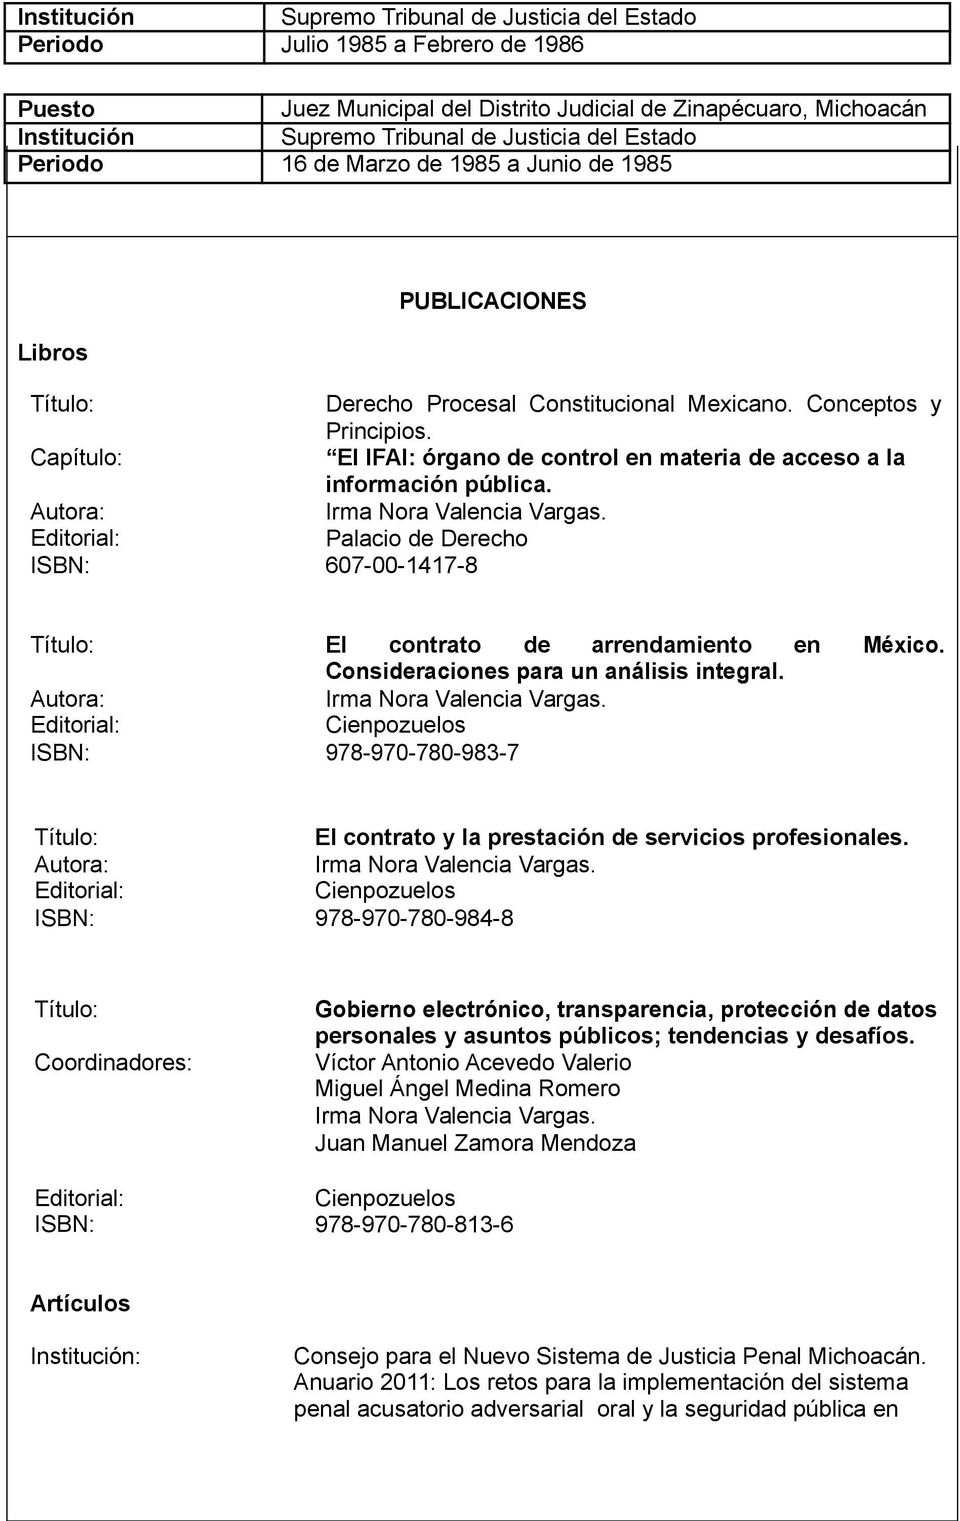 Capítulo: El IFAI: órgano de control en materia de acceso a la información pública. Autora: Editorial: Palacio de Derecho ISBN: 607-00-1417-8 Título: El contrato de arrendamiento en México.